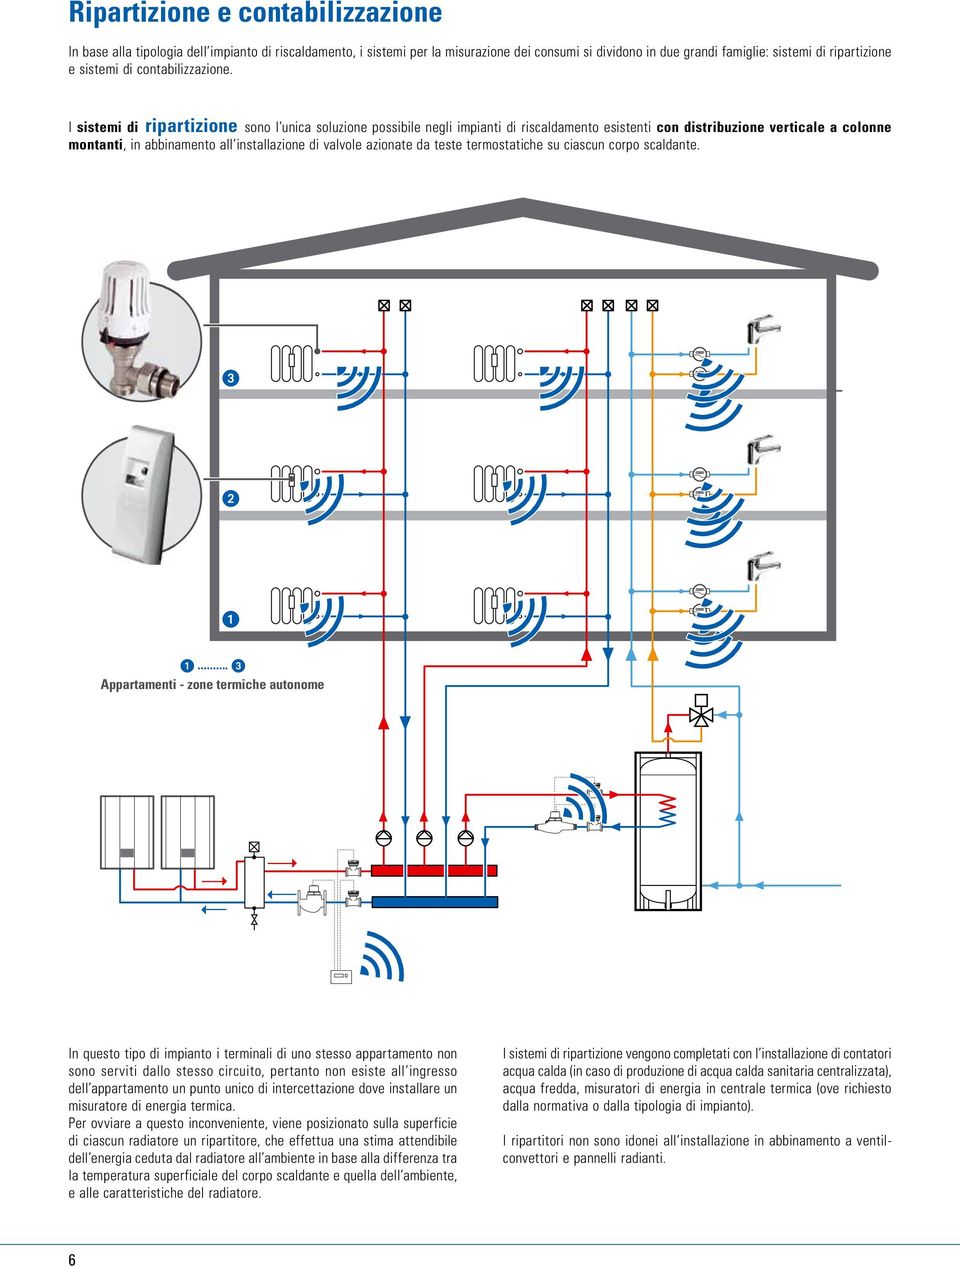 I sistemi di ripartizione sono l unica soluzione possibile negli impianti di riscaldamento esistenti con distribuzione verticale a colonne montanti, in abbinamento all installazione di valvole